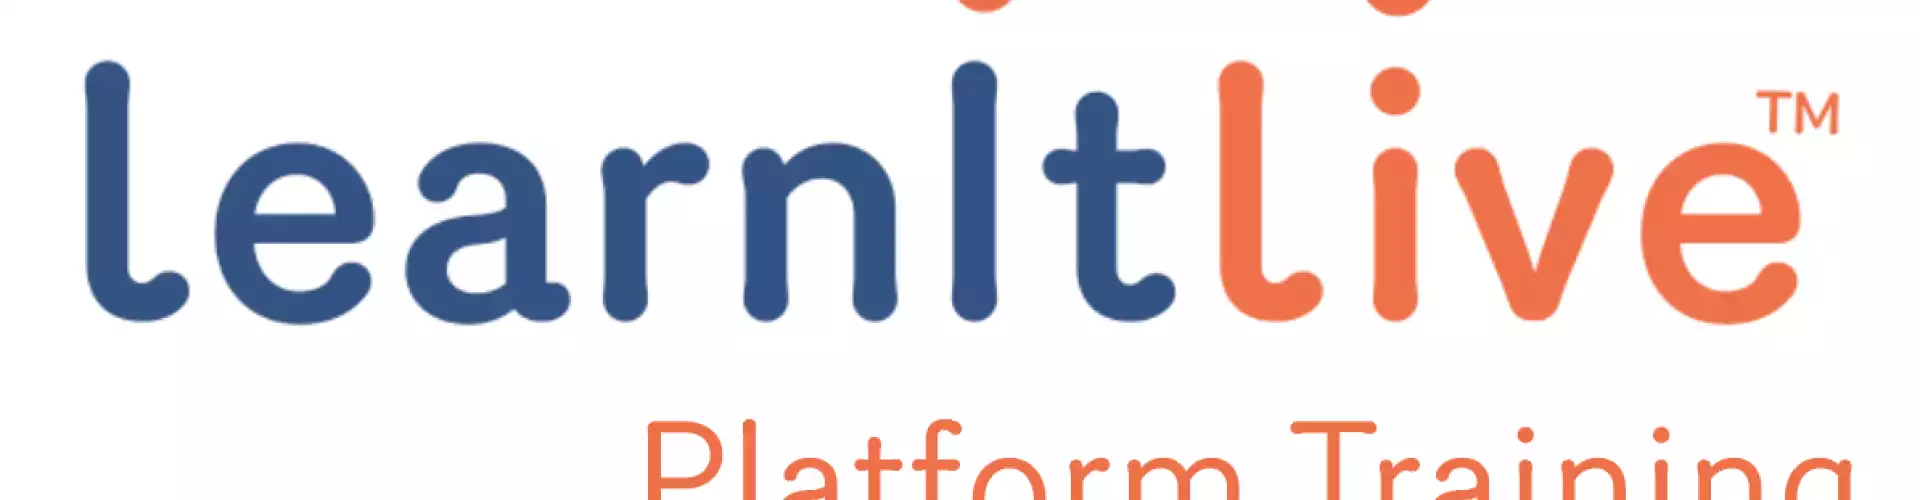 LearnItLive Platform Orientation